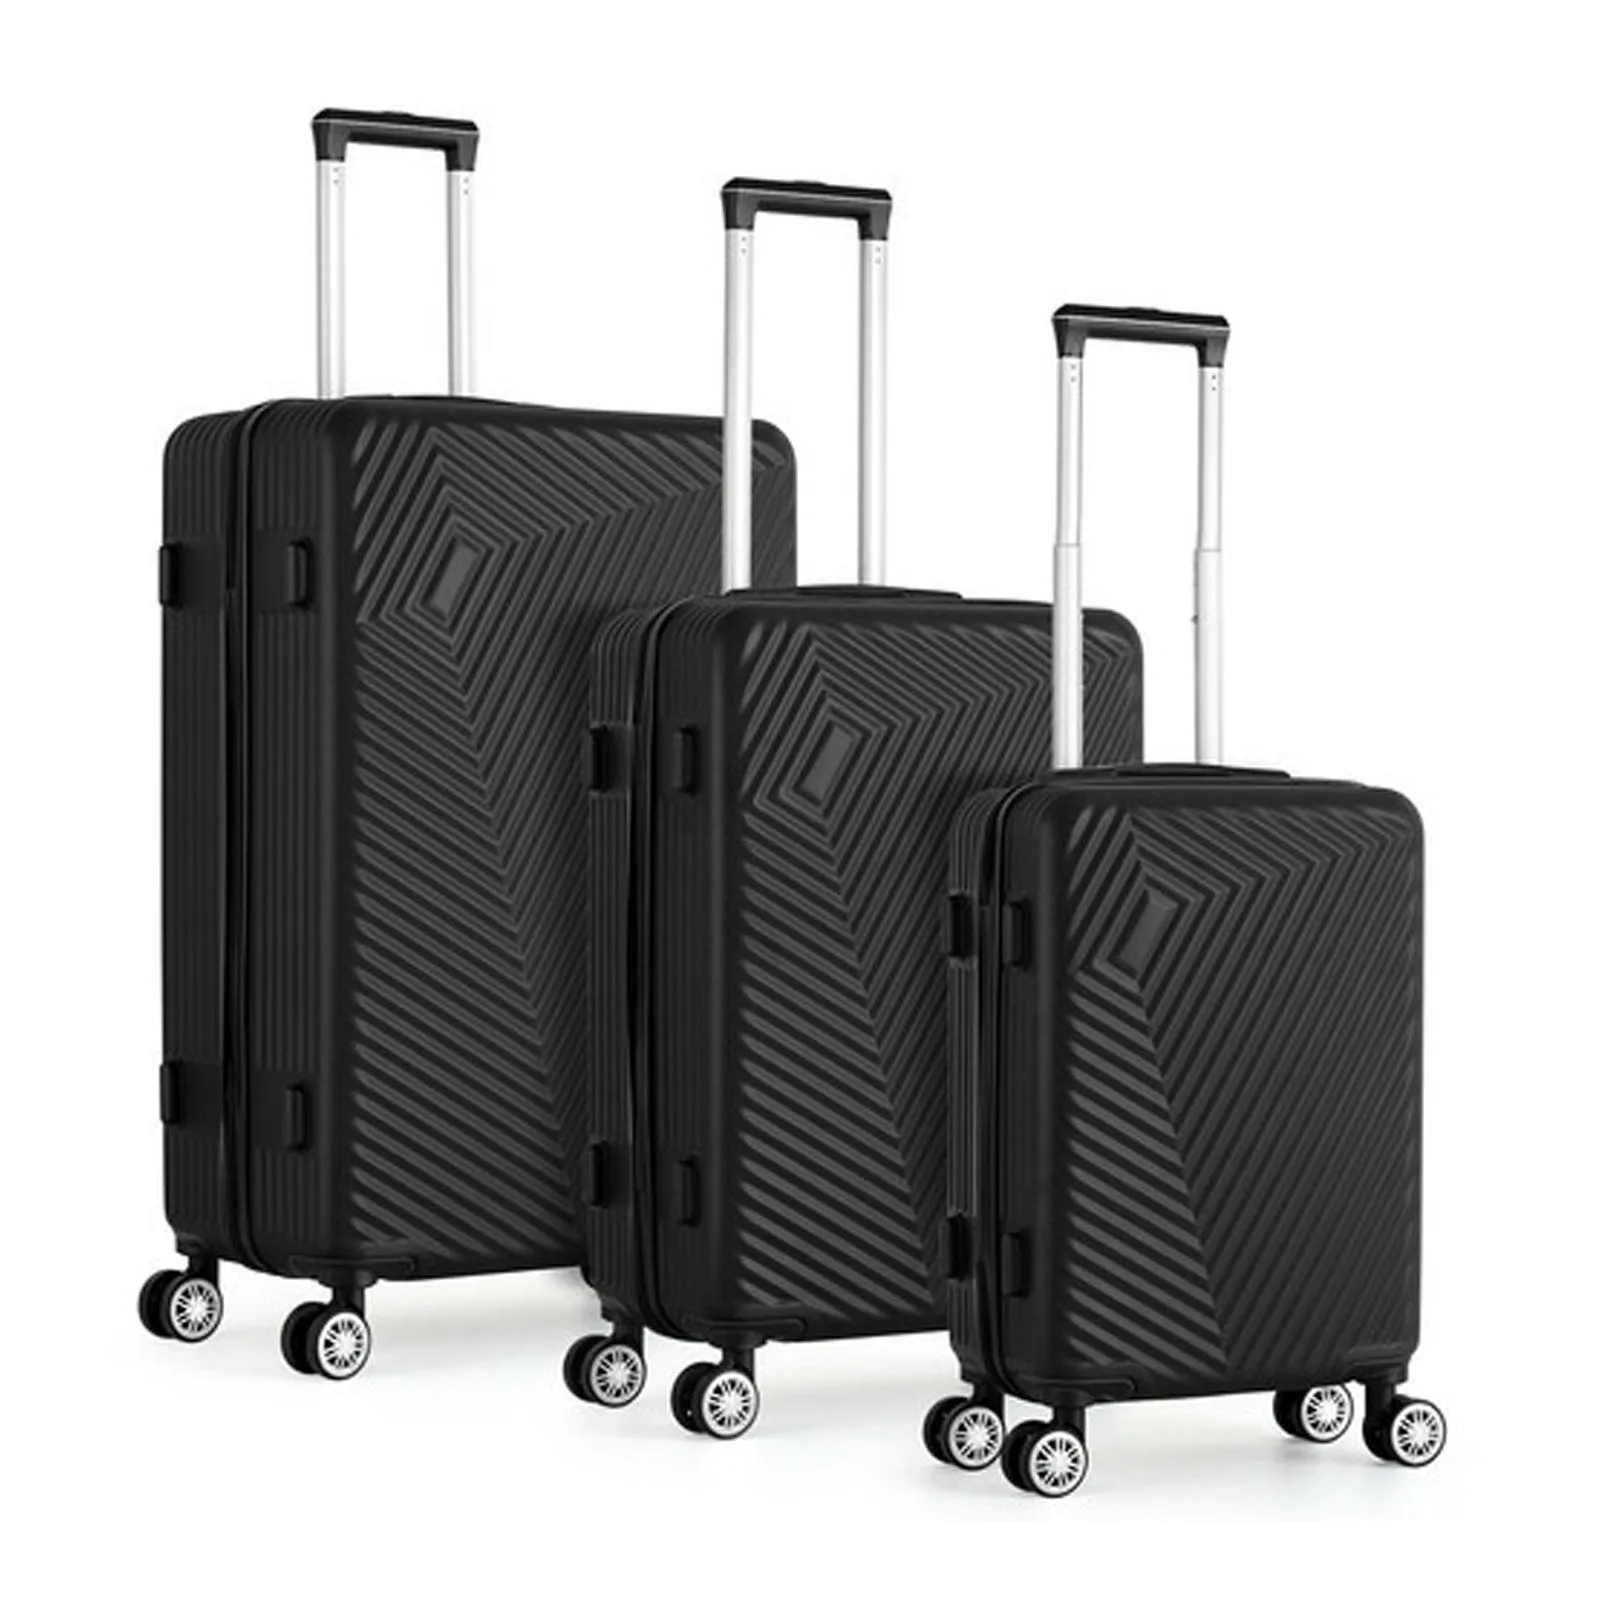 3PCS  Luggage Set Travel Suitcase Hardside Bag on Wheels TSA Luggage Maleta Cabina Three Size 20/24/28 Inch ABS Luggage